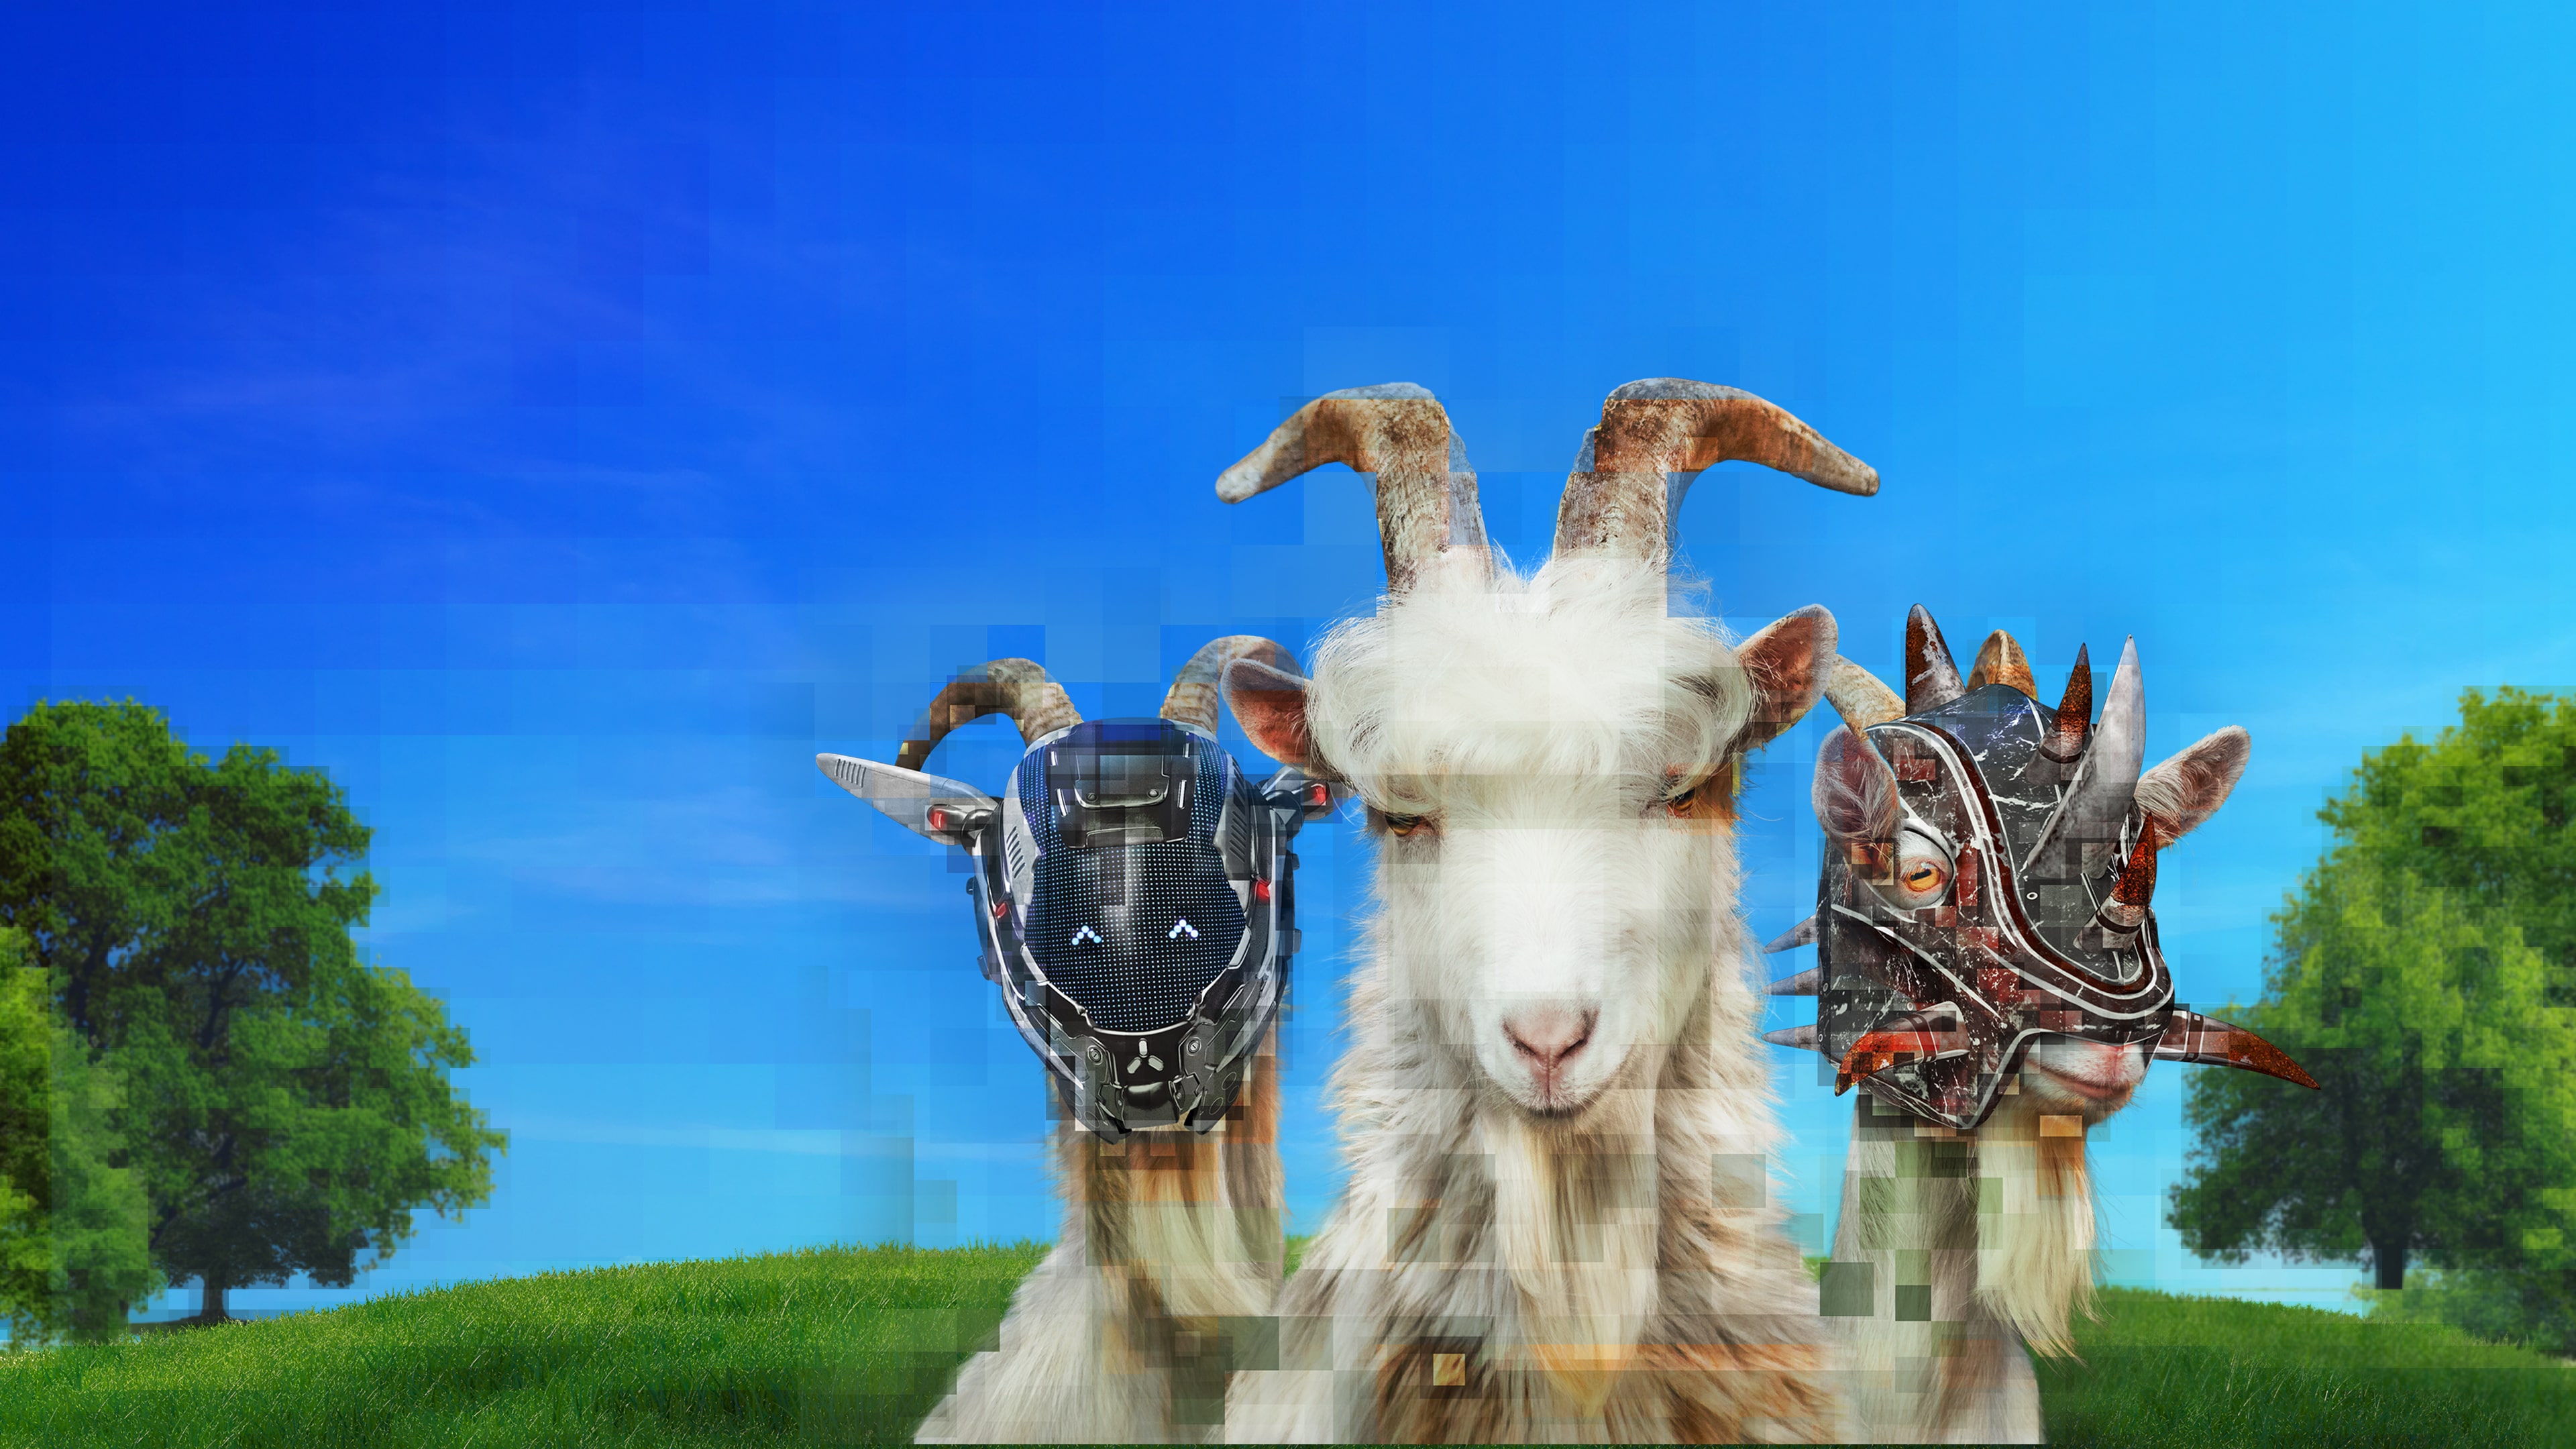 Goat Simulator 3 será lançado com multiplayer online para quatro - Drops de  Jogos